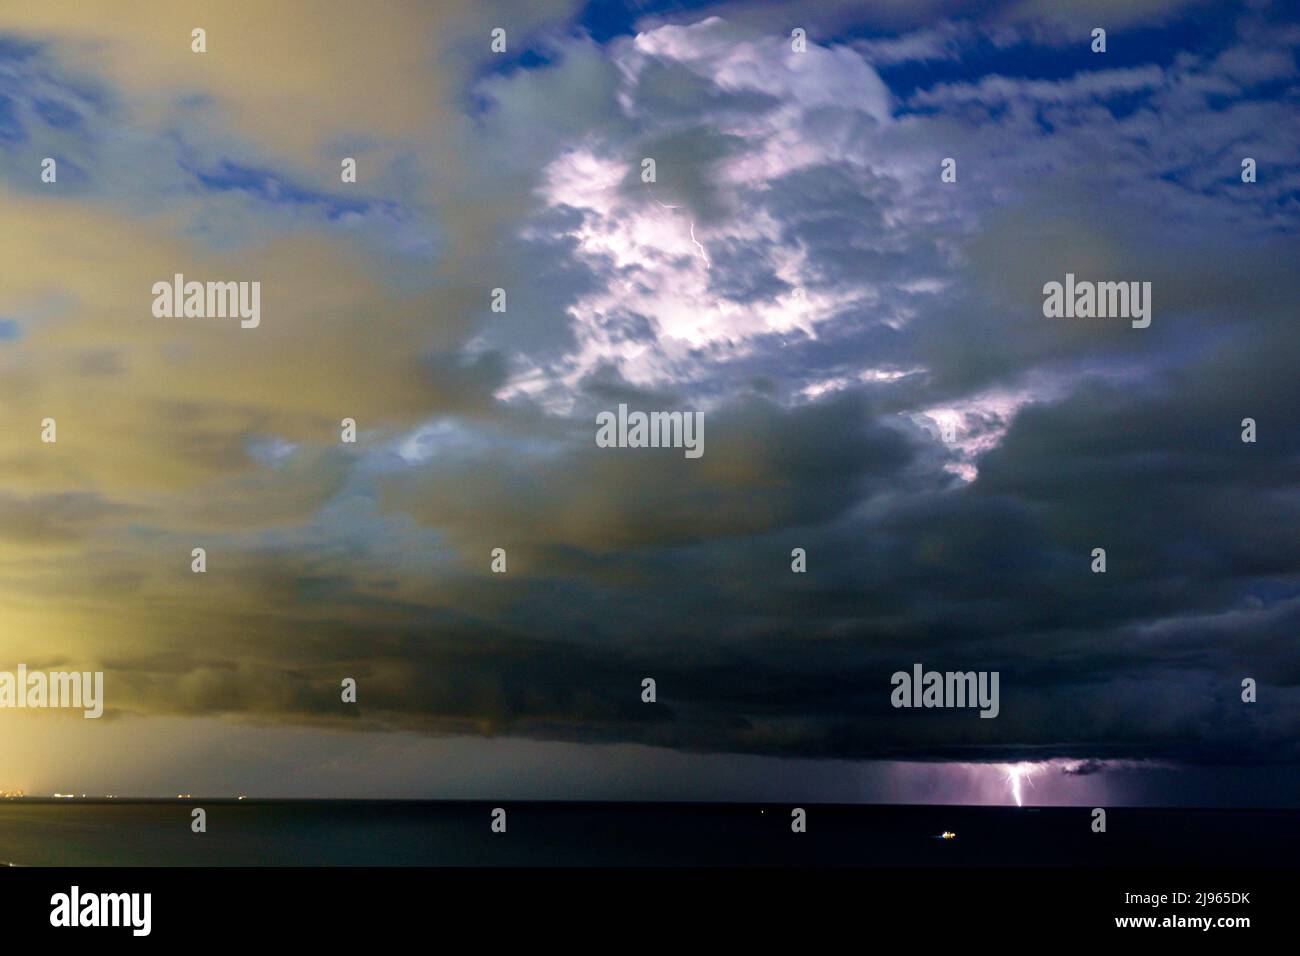 Miami Beach Florida, relámpagos pernos rayas nubes tormenta noche, sobre el Océano Atlántico Foto de stock